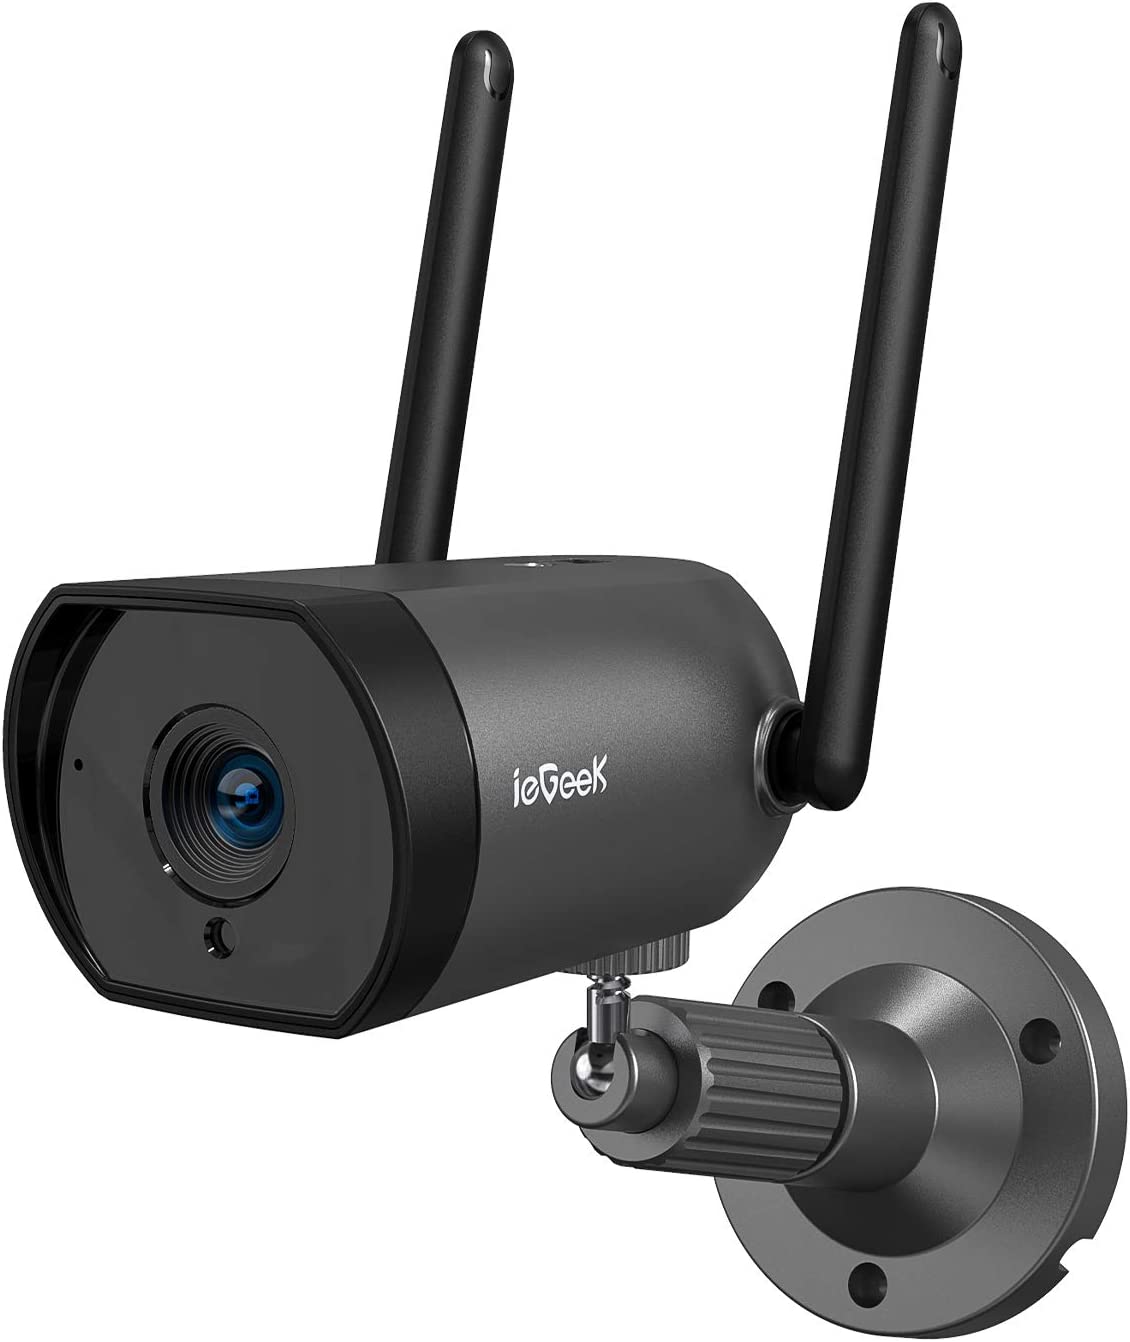 Caméra de sécurité extérieure ieGeek avec vision nocturne de 25 m, antenne 4 dBi, système de caméra de vidéosurveillance filaire WiFi sans fil